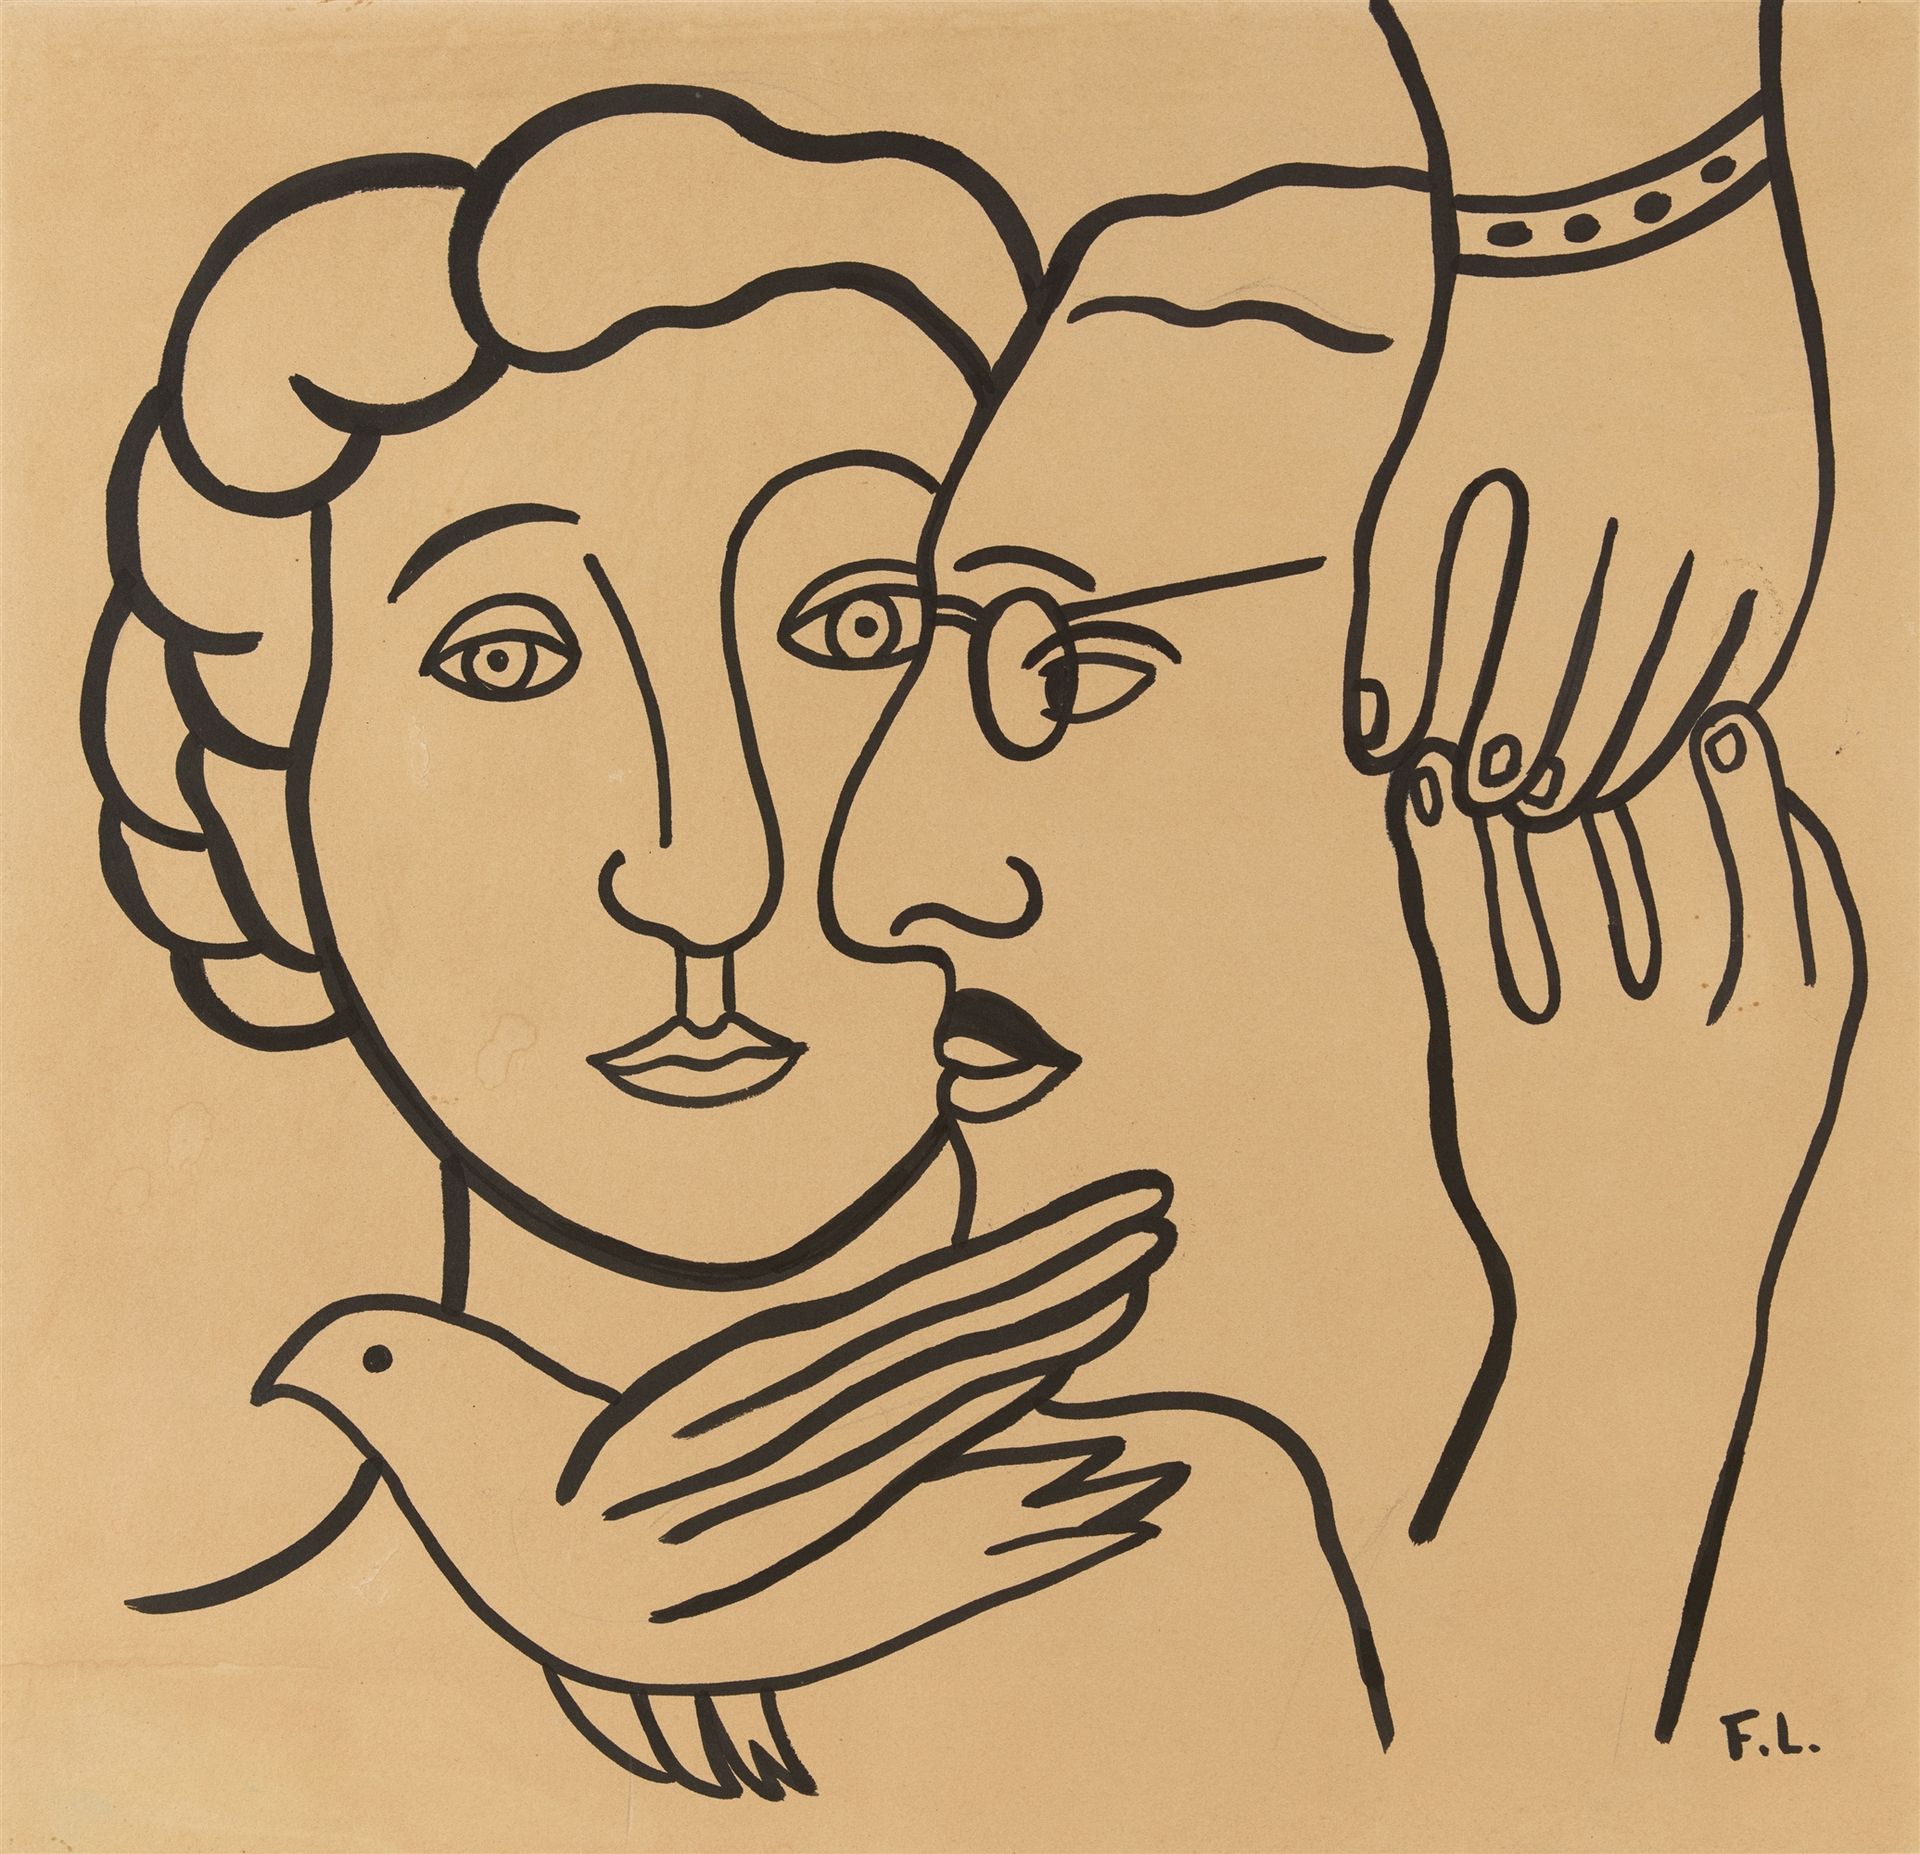 Fernand Léger Fernand Léger



Les Rosenbergs

Alrededor de 1951



Pincel de ti&hellip;